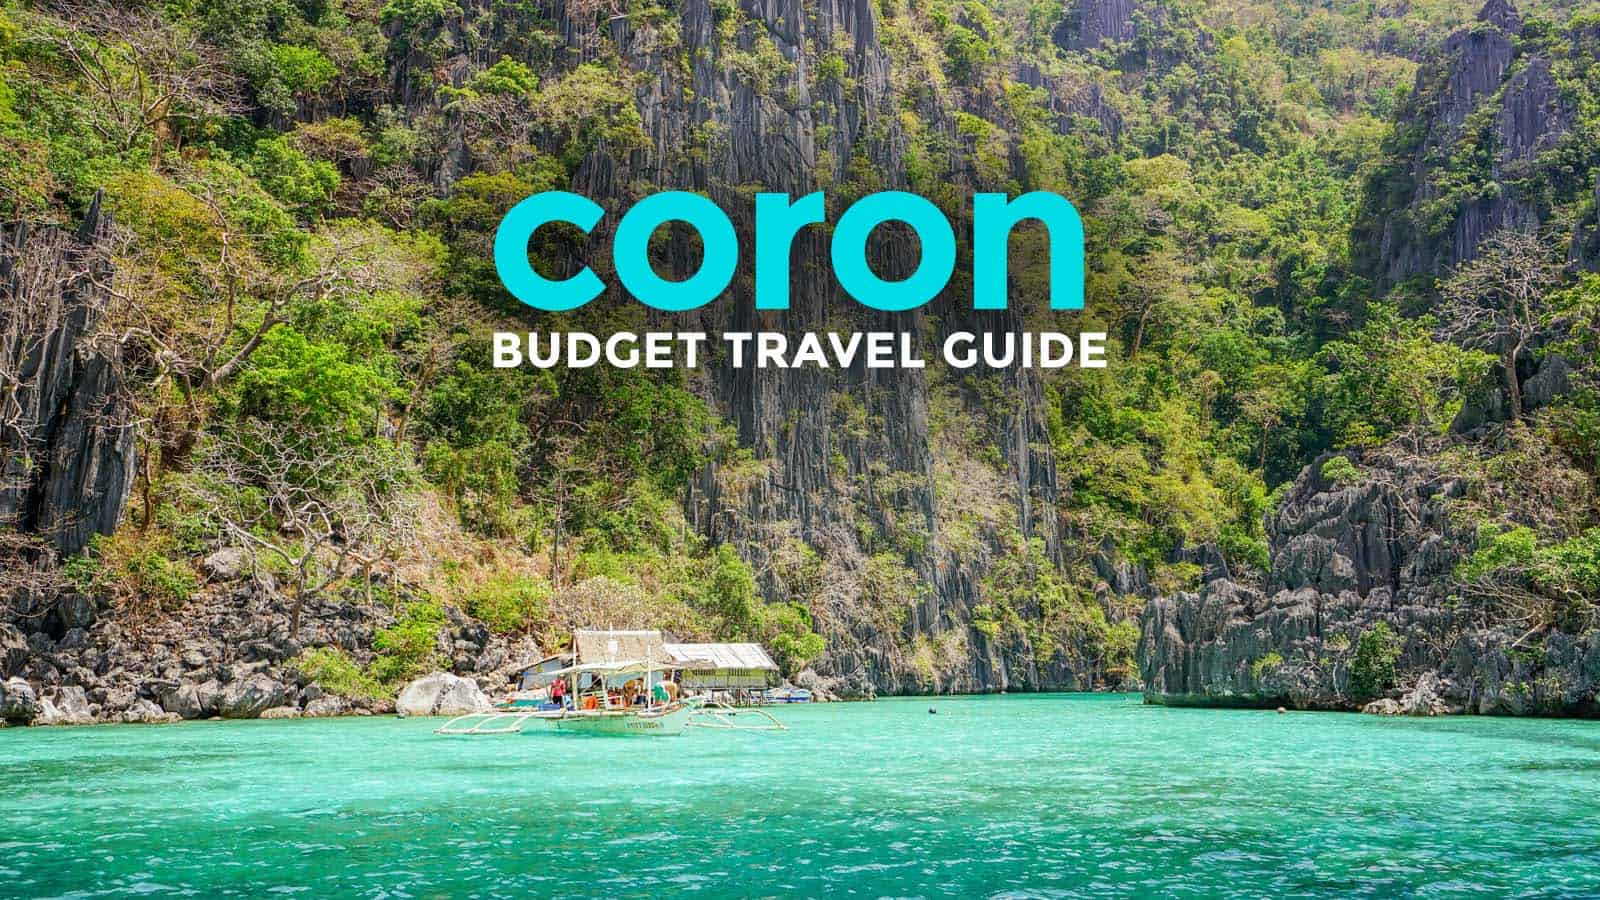 CORON PALAWAN旅游指南与预算行程